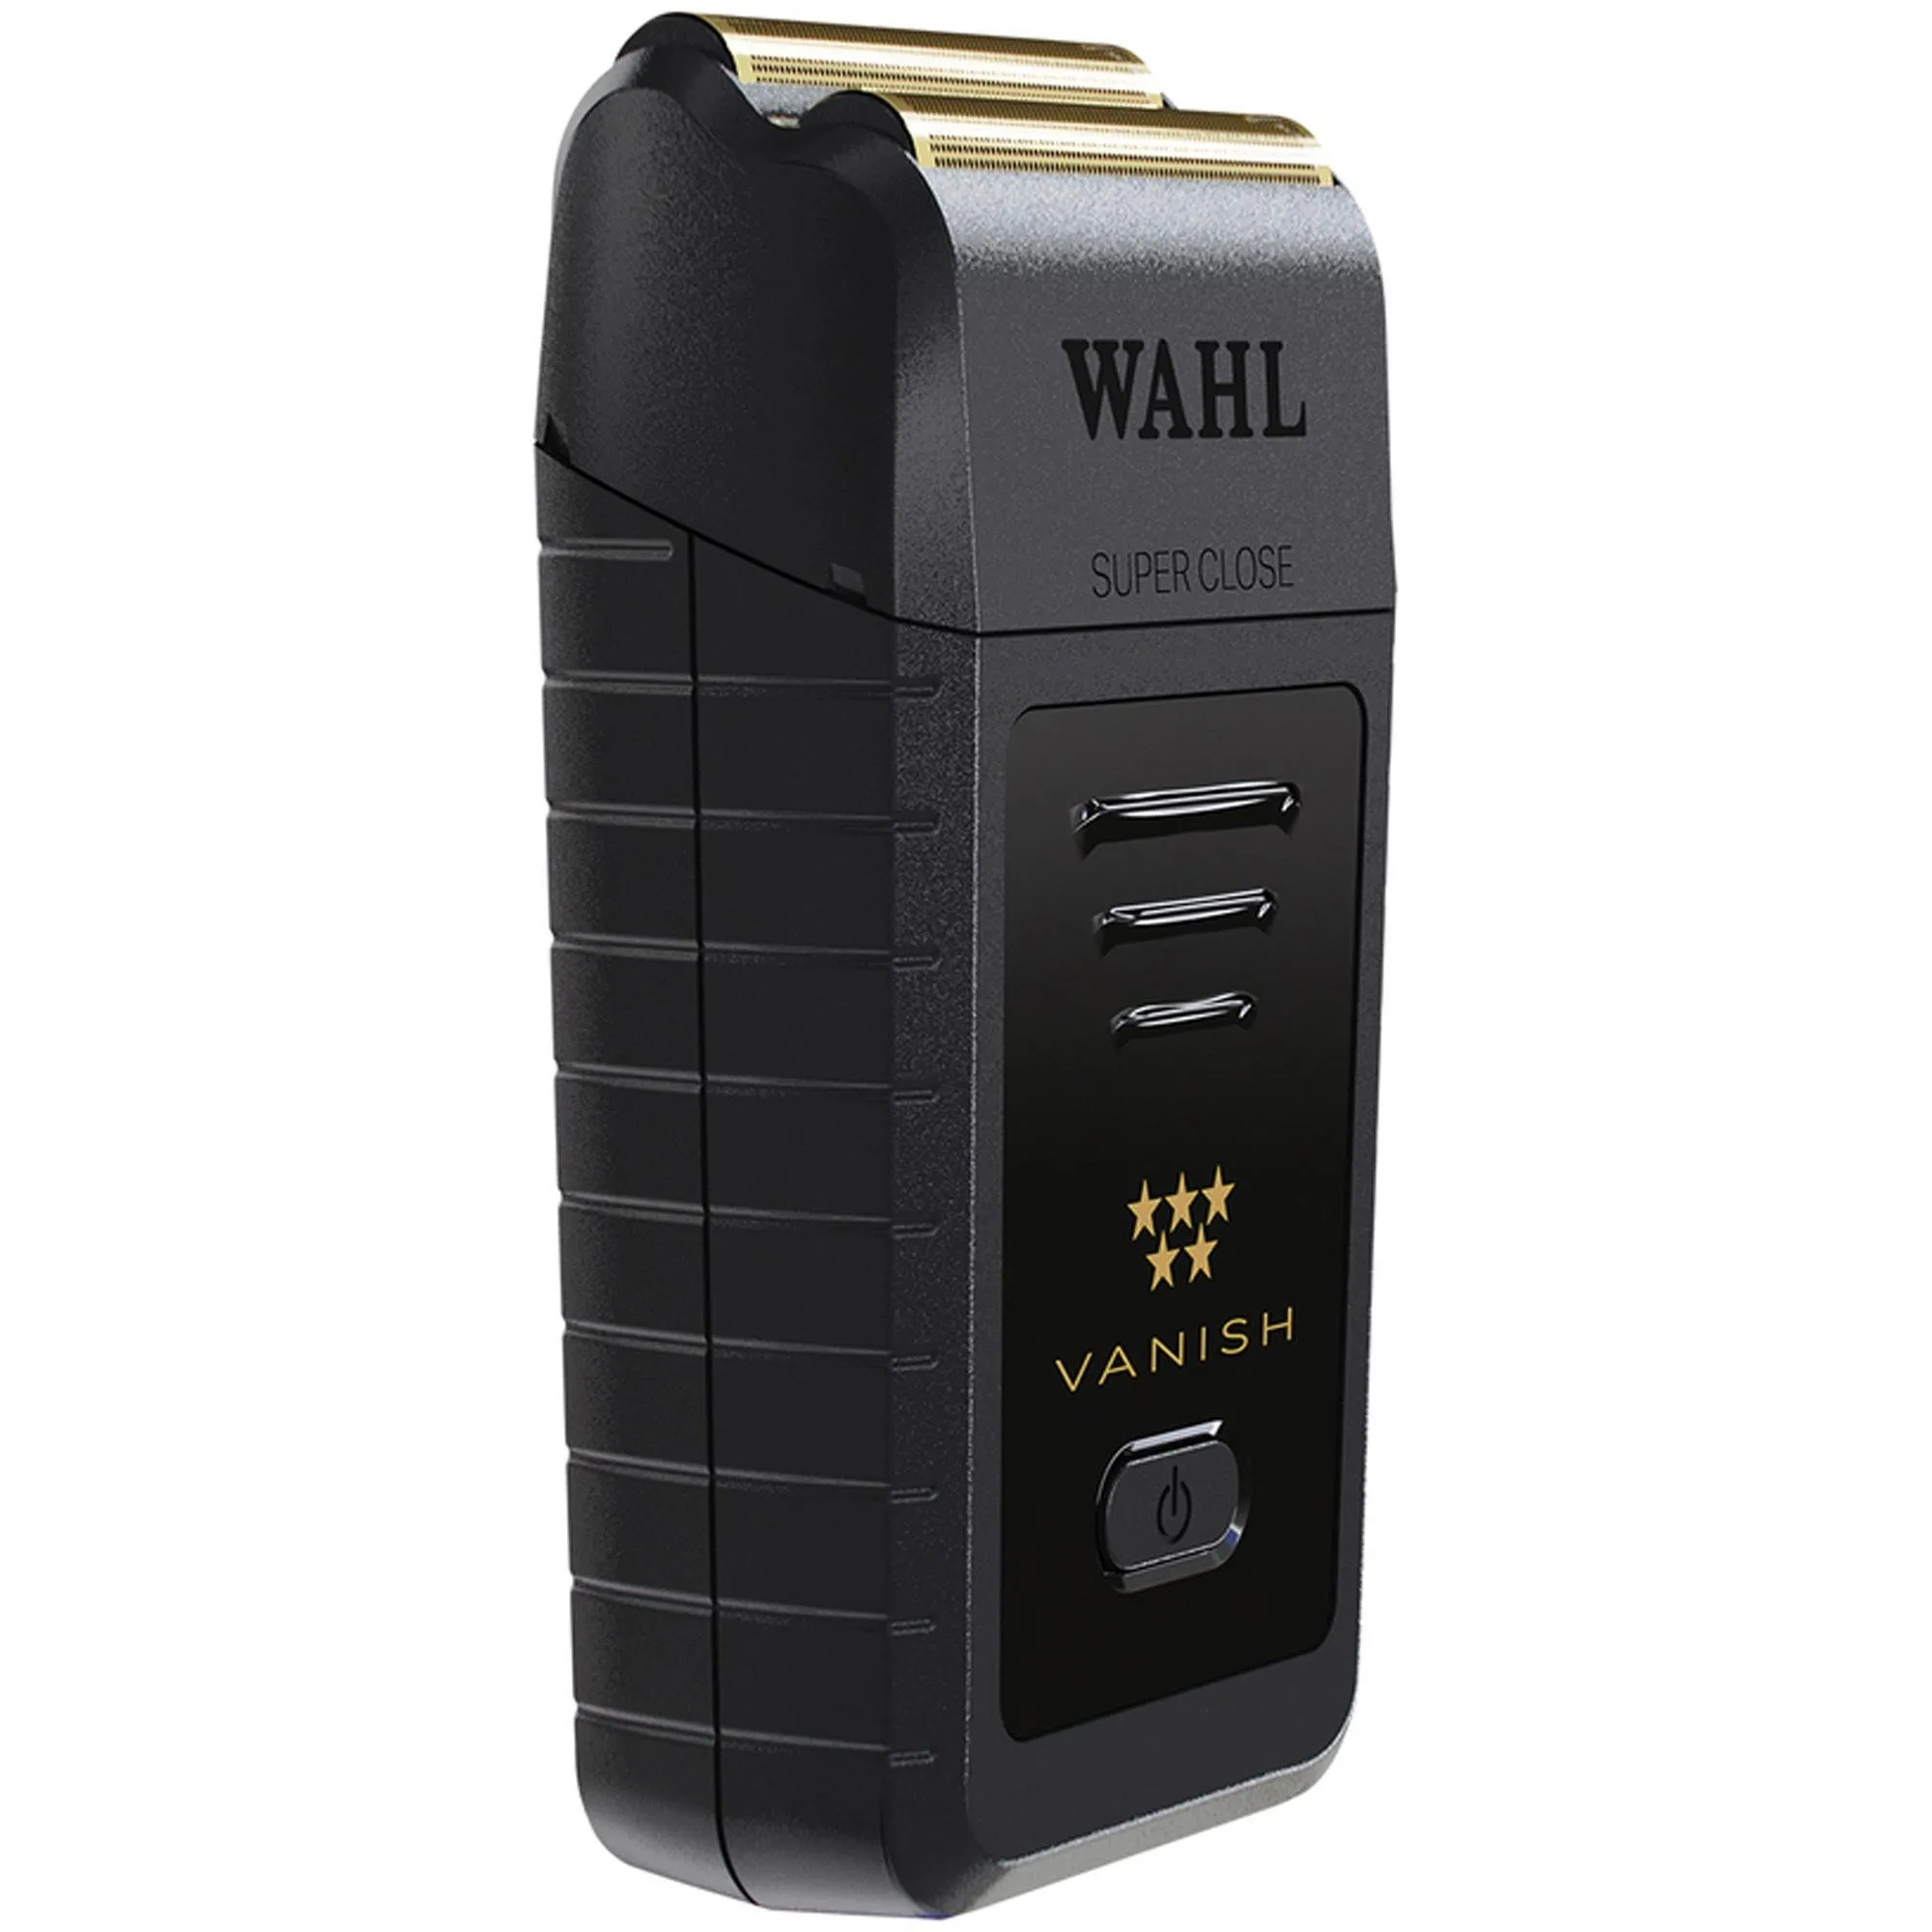 Máquina de Acabamento Wahl Vanish Gold por 860,99 à vista no boleto/pix ou parcele em até 10x sem juros. Compre na loja Mundomax!